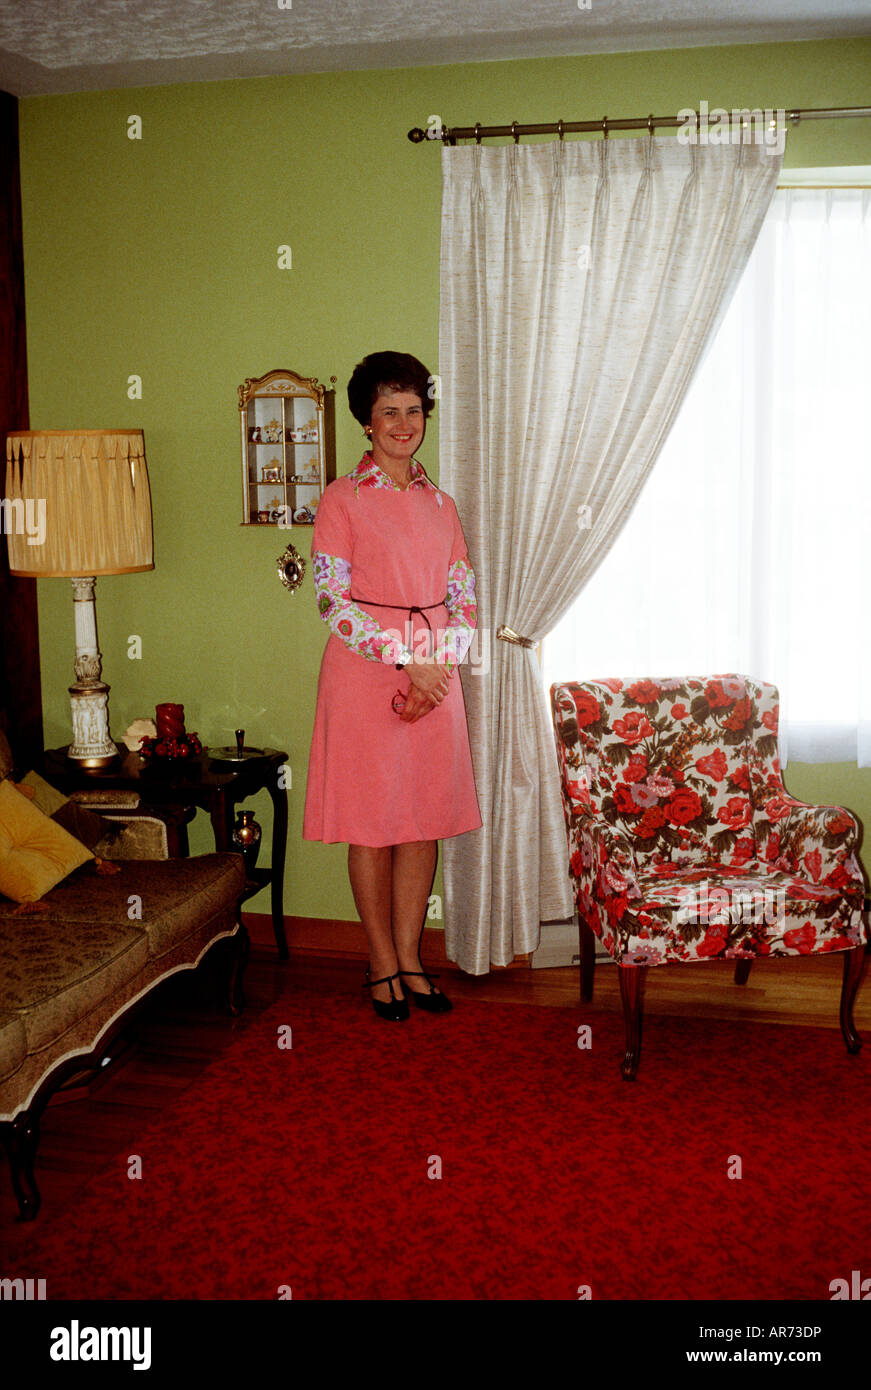 70 femme au foyer en robe rose se dresse fièrement dans le coin du salon rouge et jaune. Chaise à motifs et ornements de la table. Banque D'Images